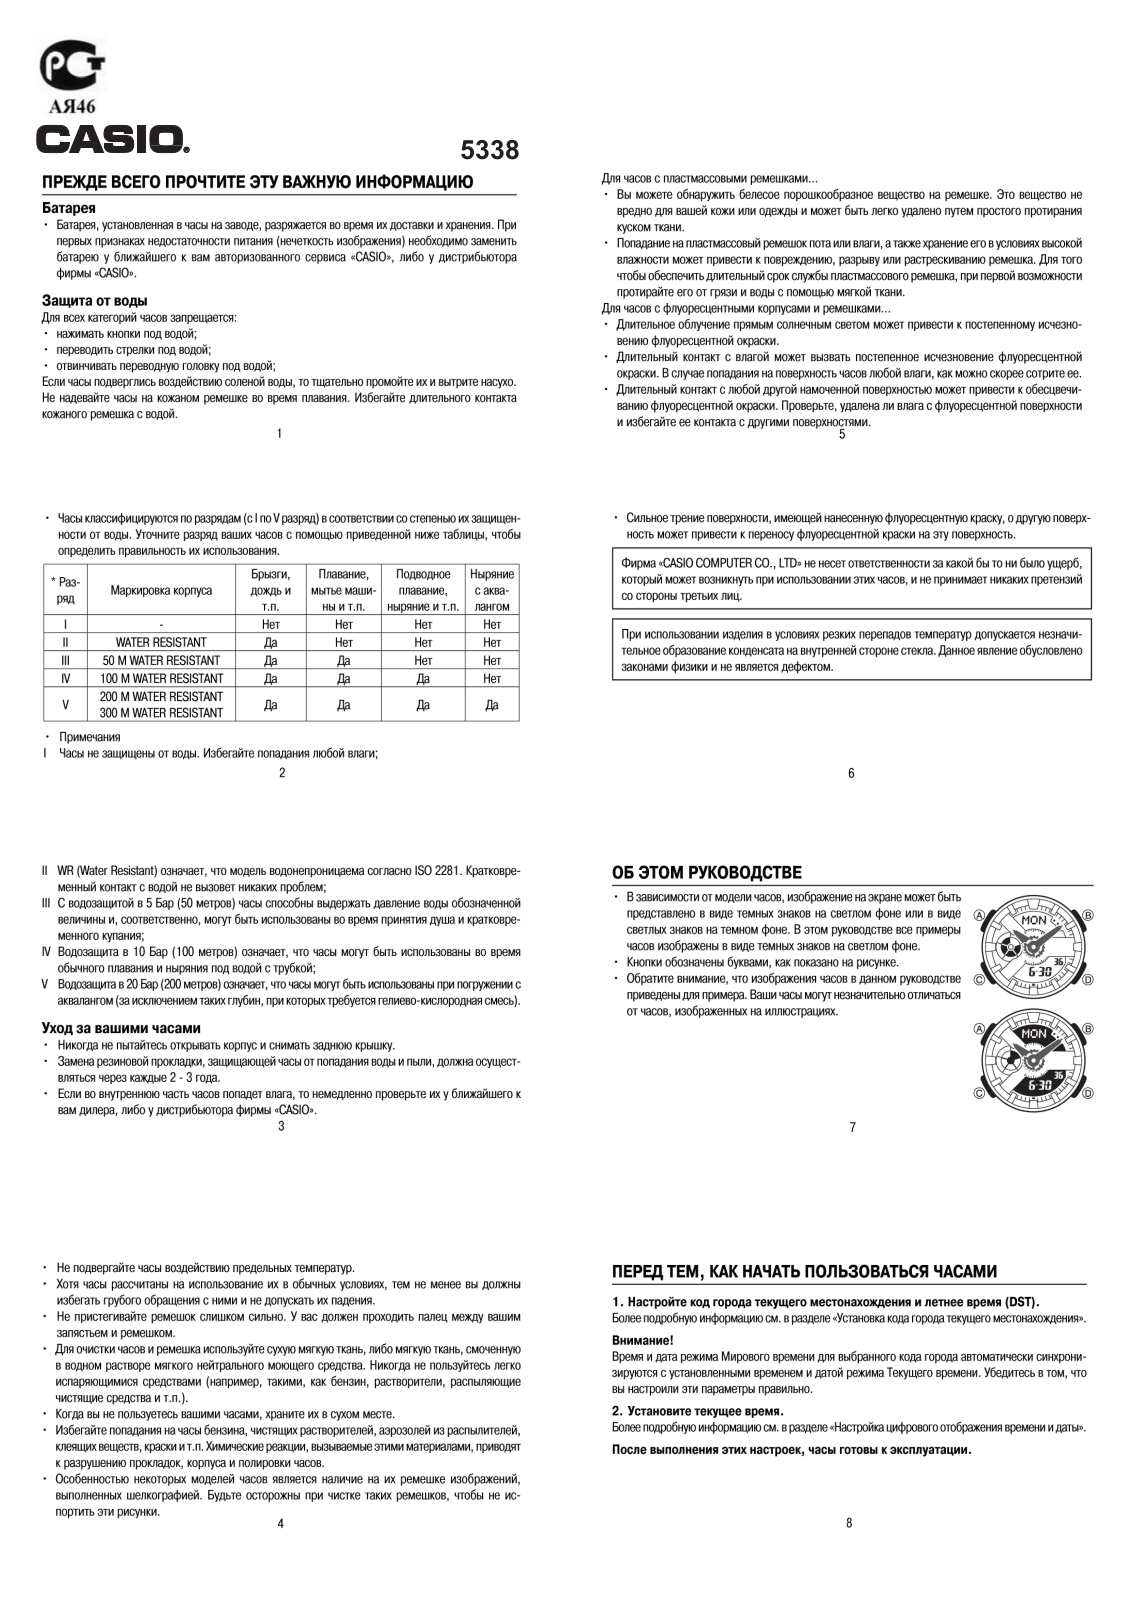 Casio BA-110PP-8A User Manual